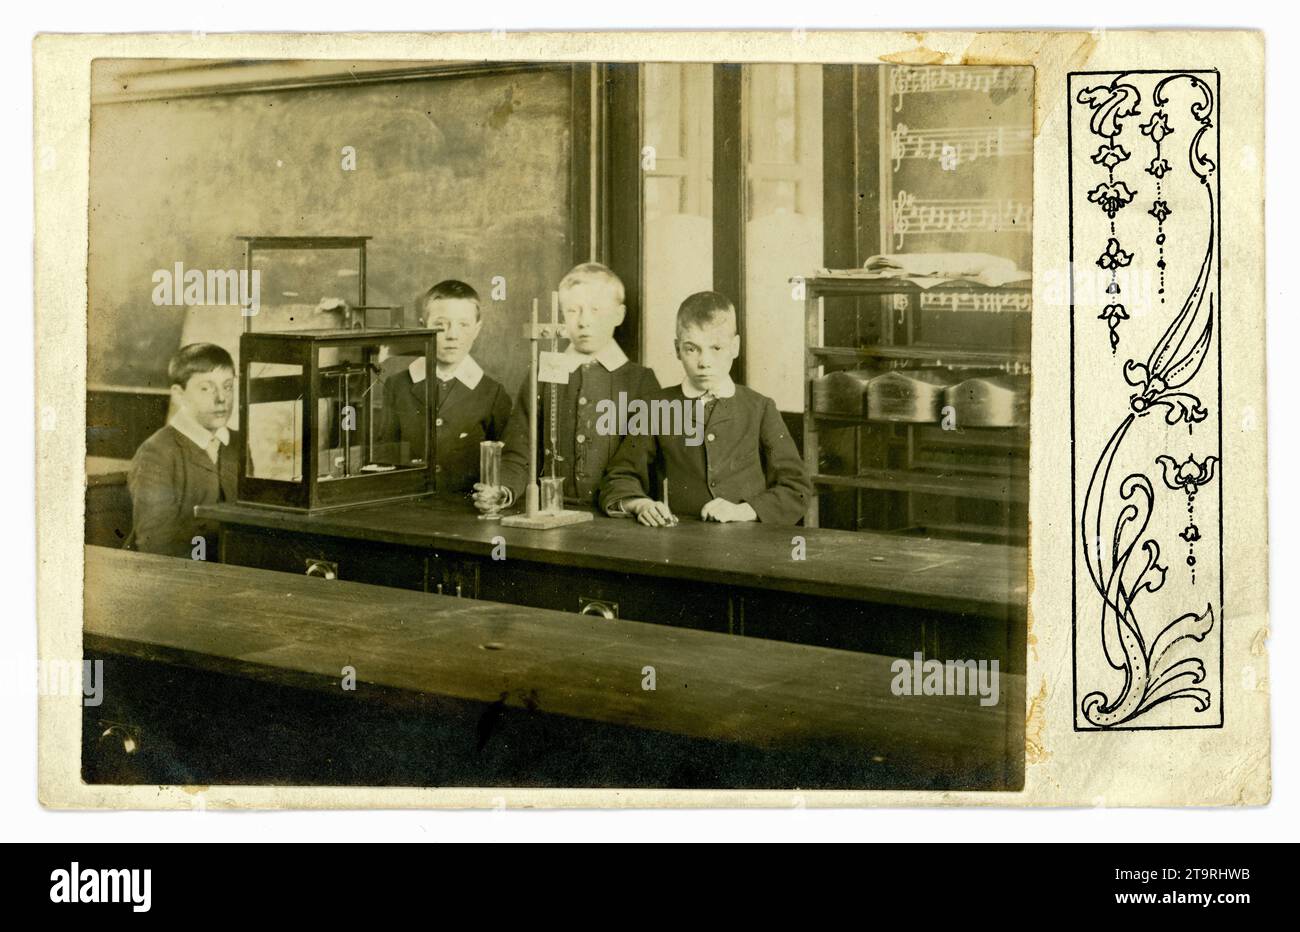 Carte postale édouardienne originale d'écoliers assistant à des leçons de sciences en classe, avec équipement. Circa 1905, Royaume-Uni Banque D'Images